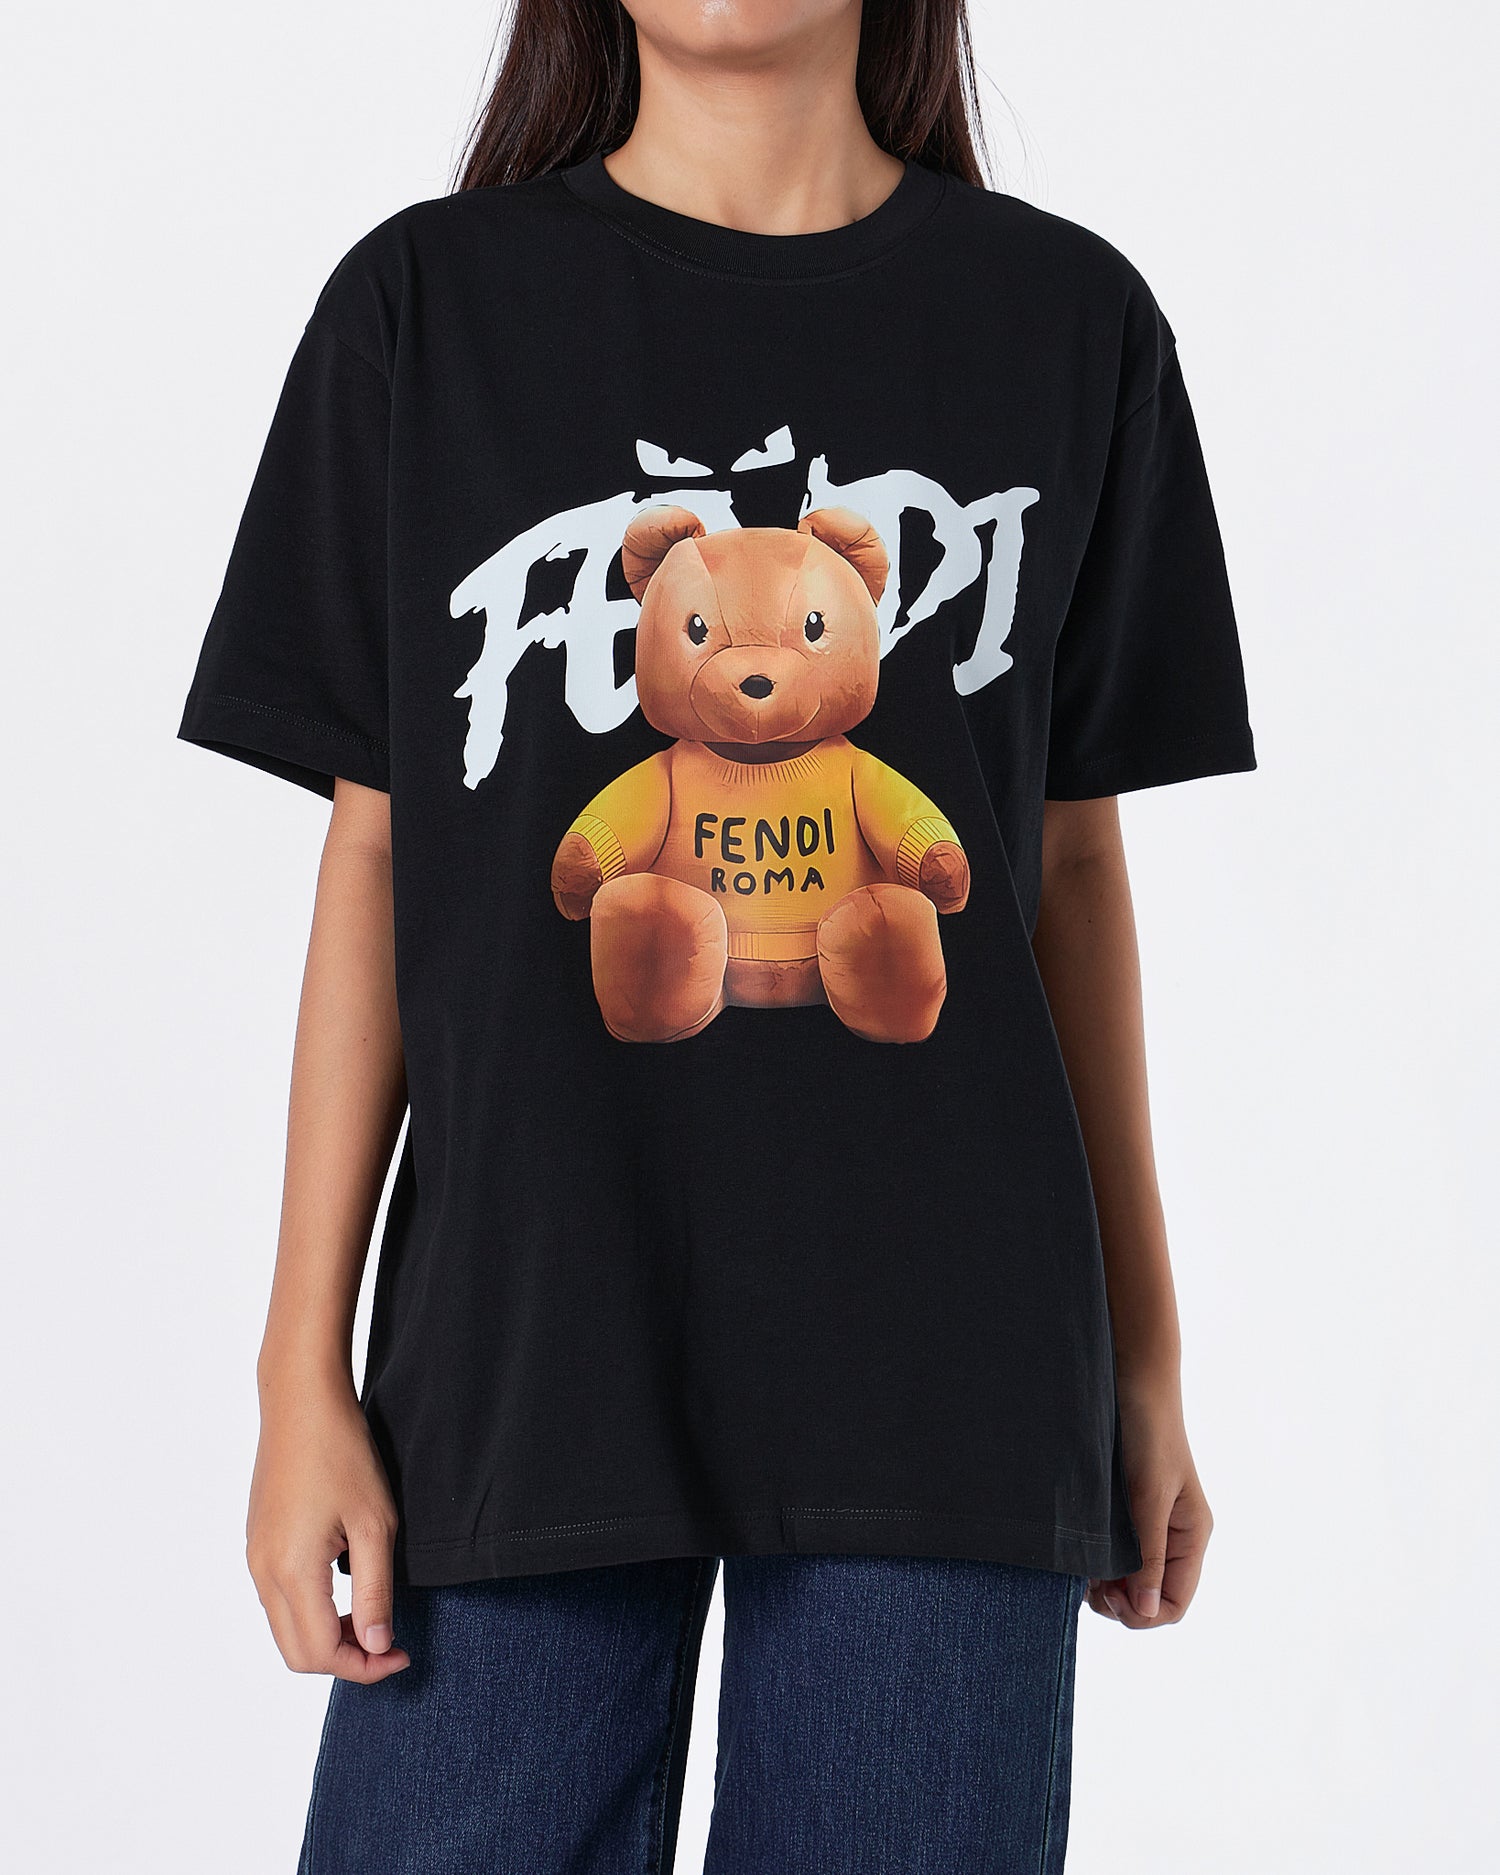 FEN Teddy Bear Printed Unisex Black T-Shirt 22.90